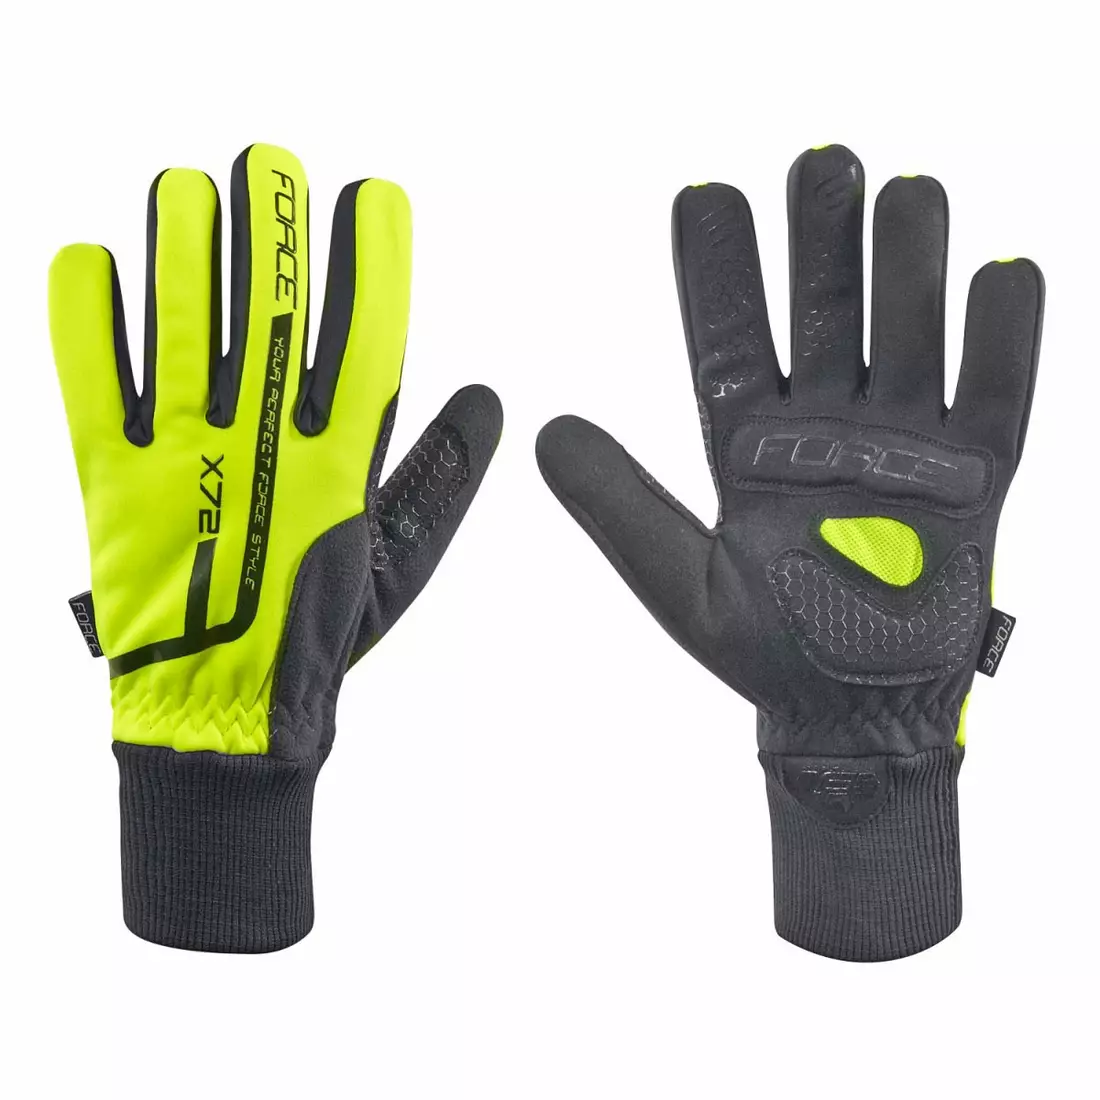 FORCE X72 mănuși de iarnă pentru ciclism fluor galben